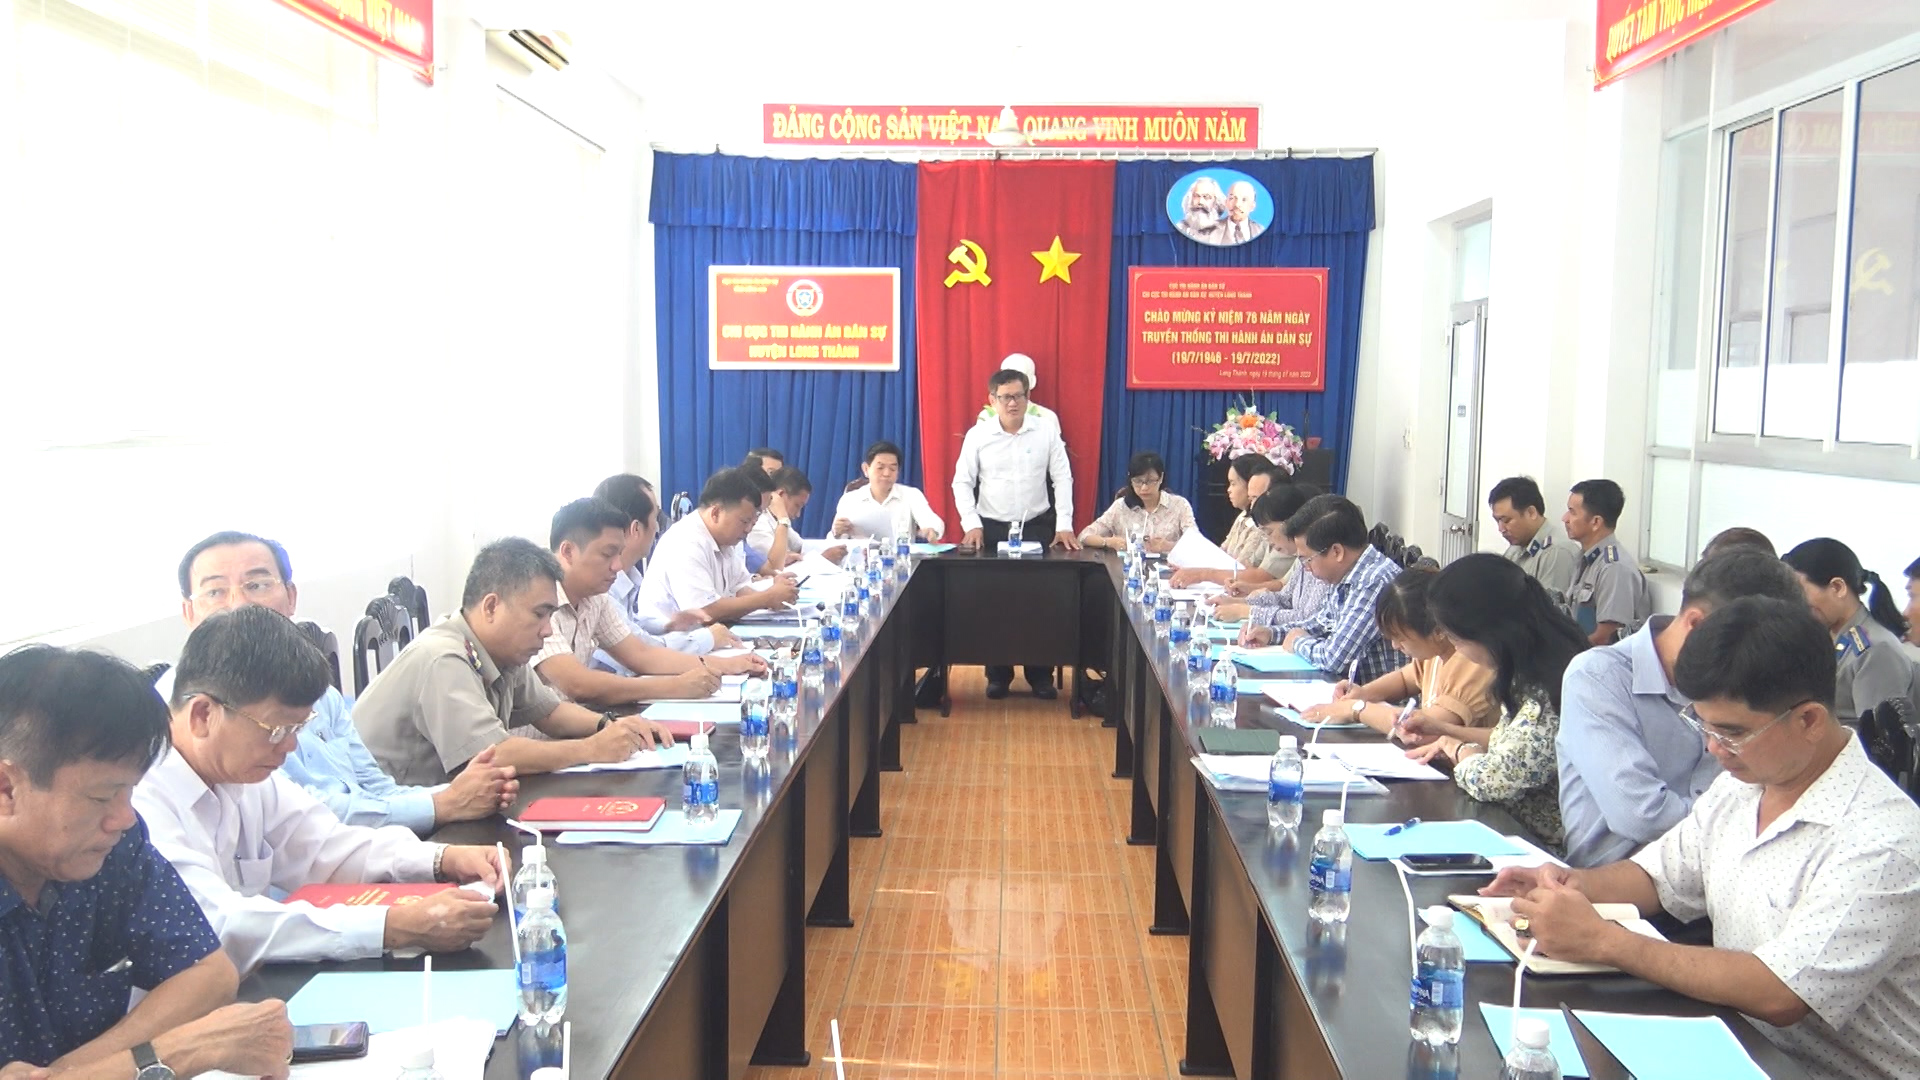 Sáng  (18/8), Đoàn giám sát HĐND tỉnh tiếp tục giám sát công tác thi hành án dân sự năm 2021 và 6 tháng đầu năm 2022 trên địa bàn huyện Long Thành